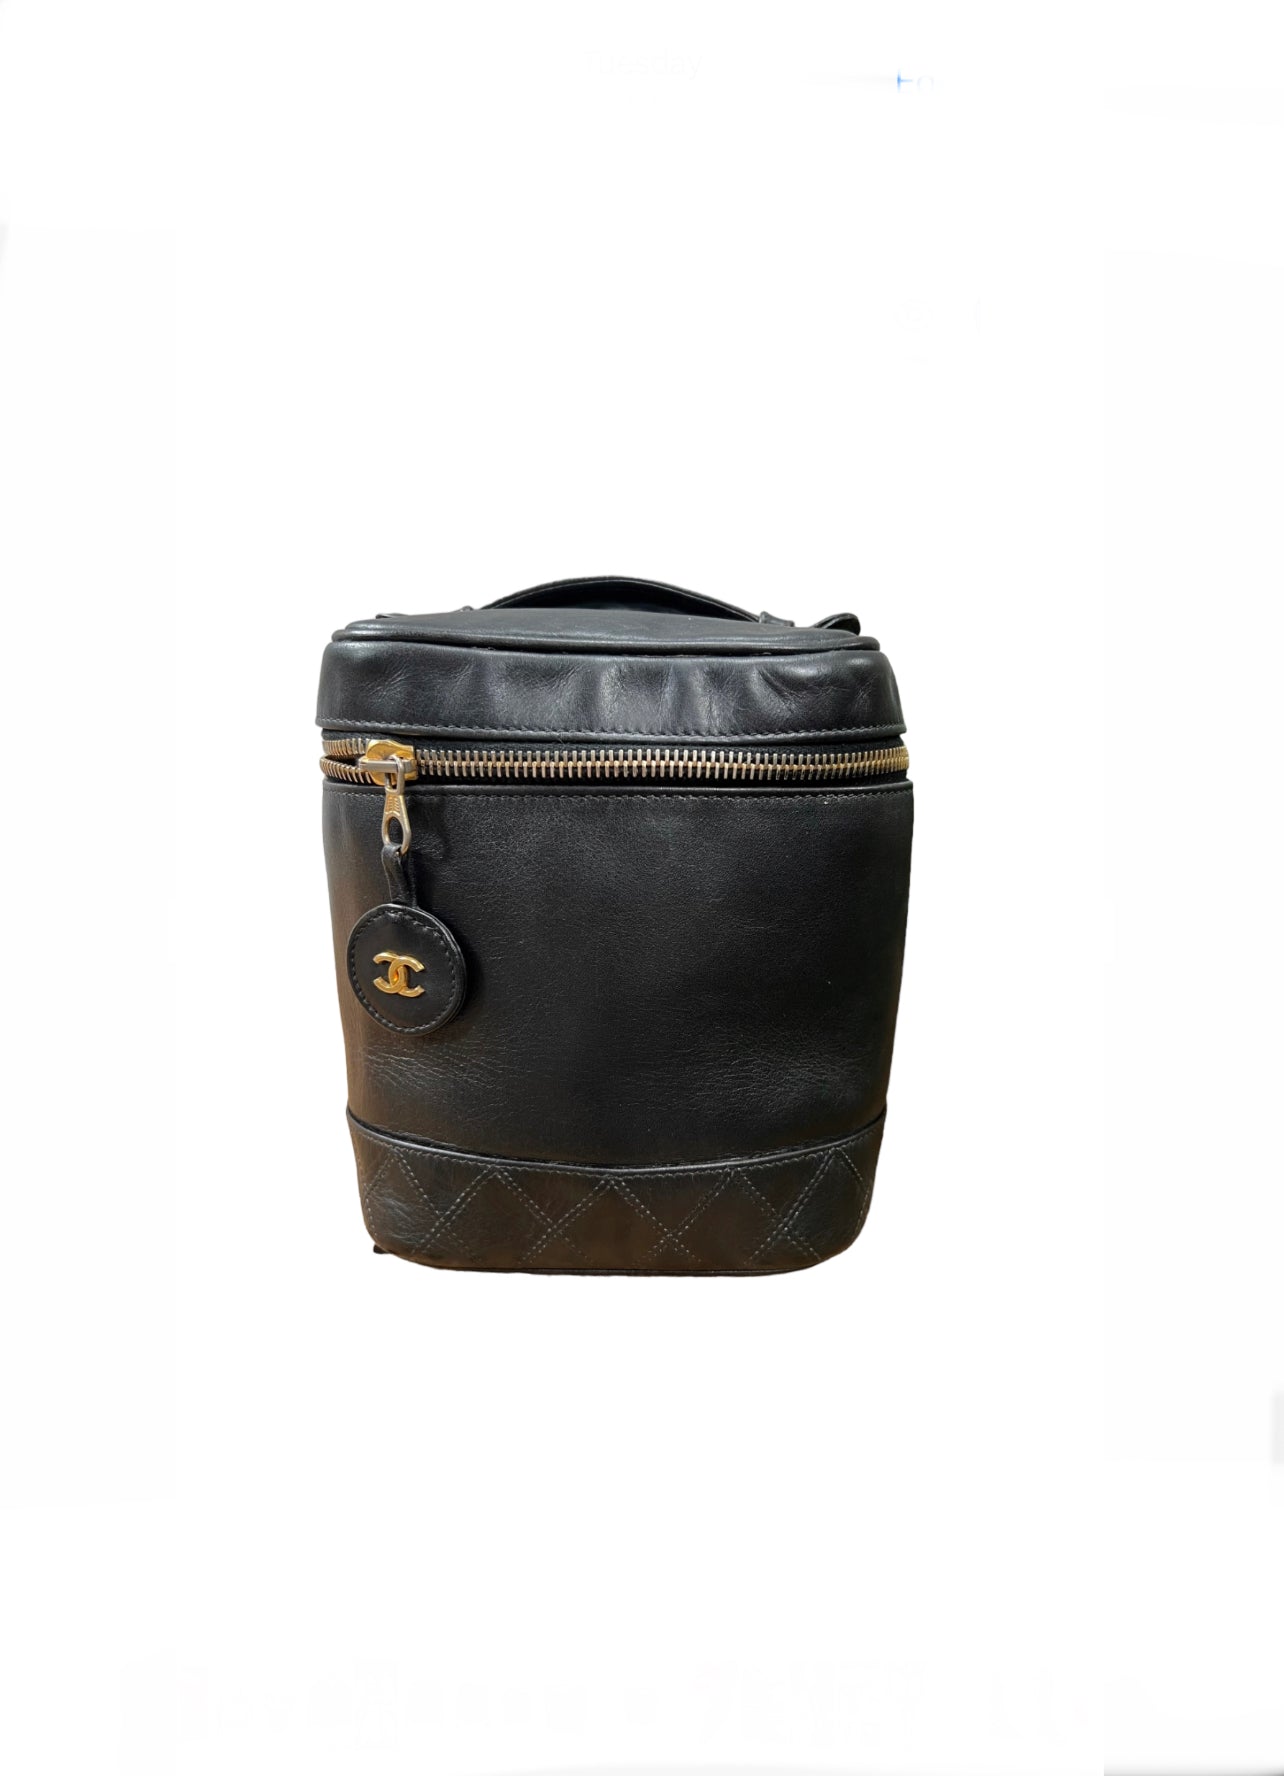 Vintage Chanel Vanity Case Bag